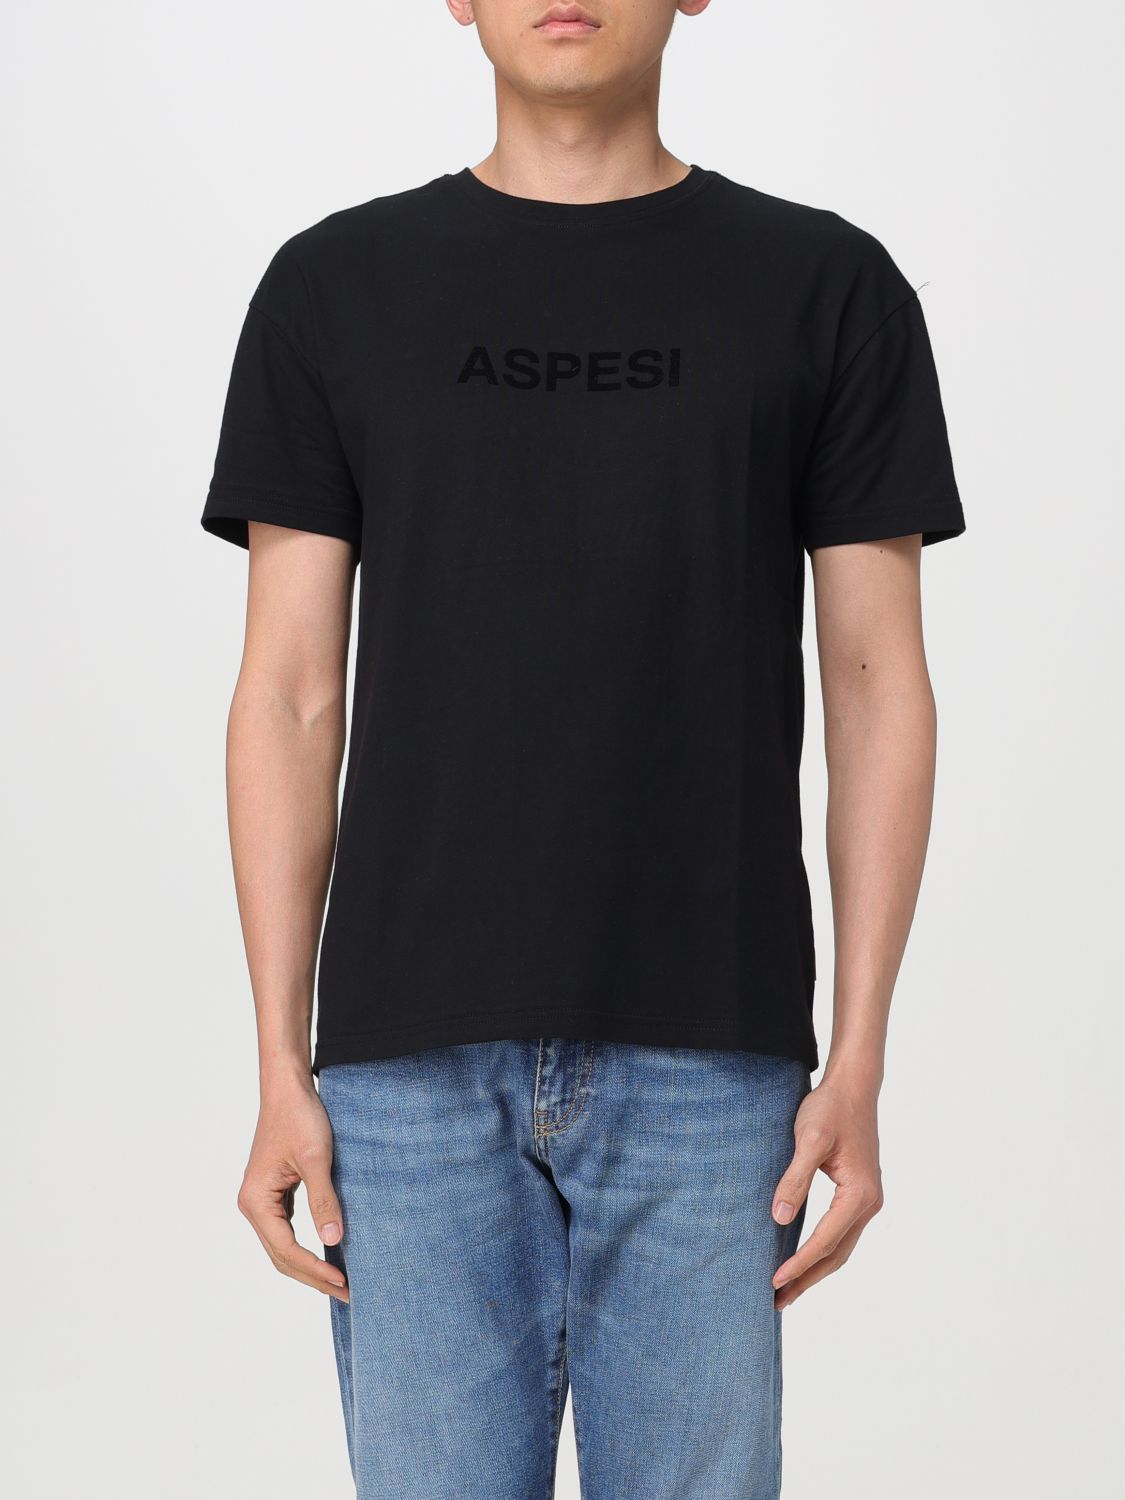 Aspesi T-Shirt ASPESI Men colour Black